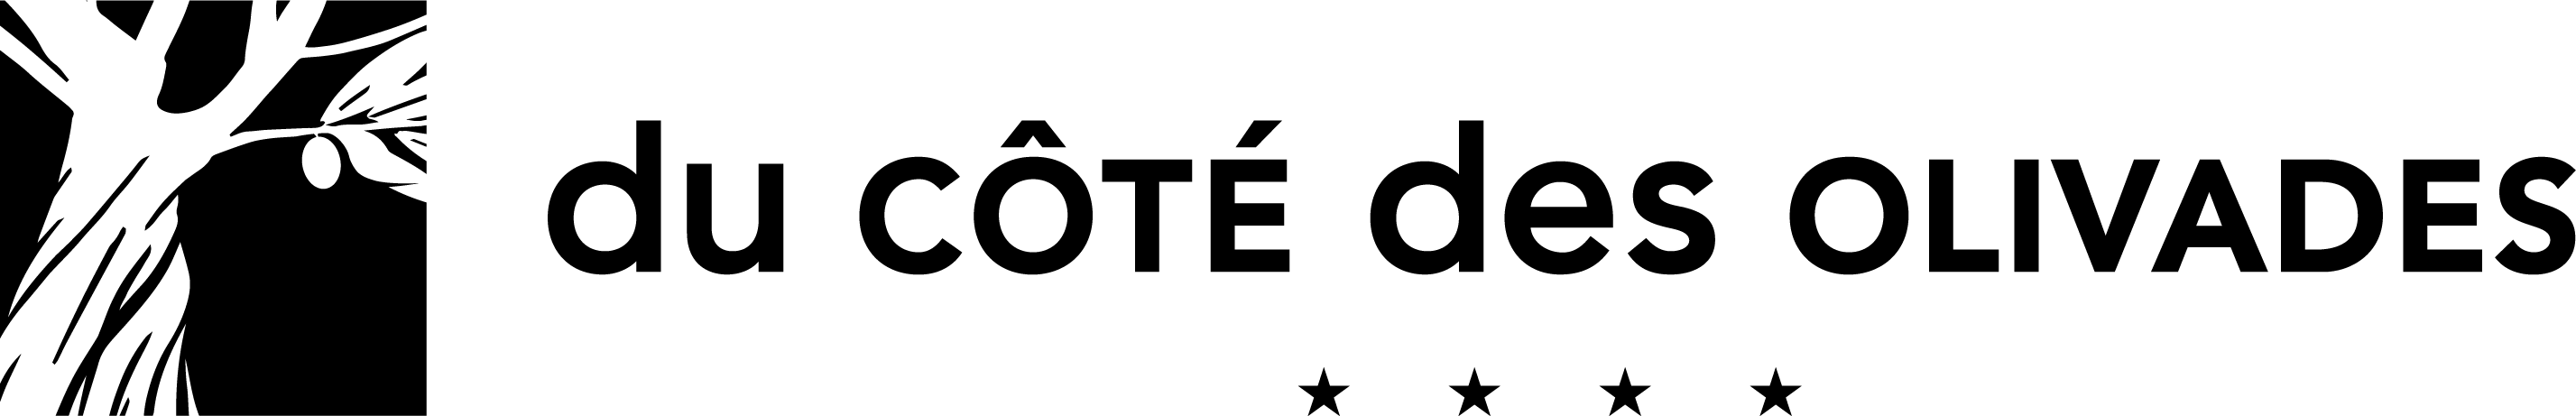 logo du côté des olivades